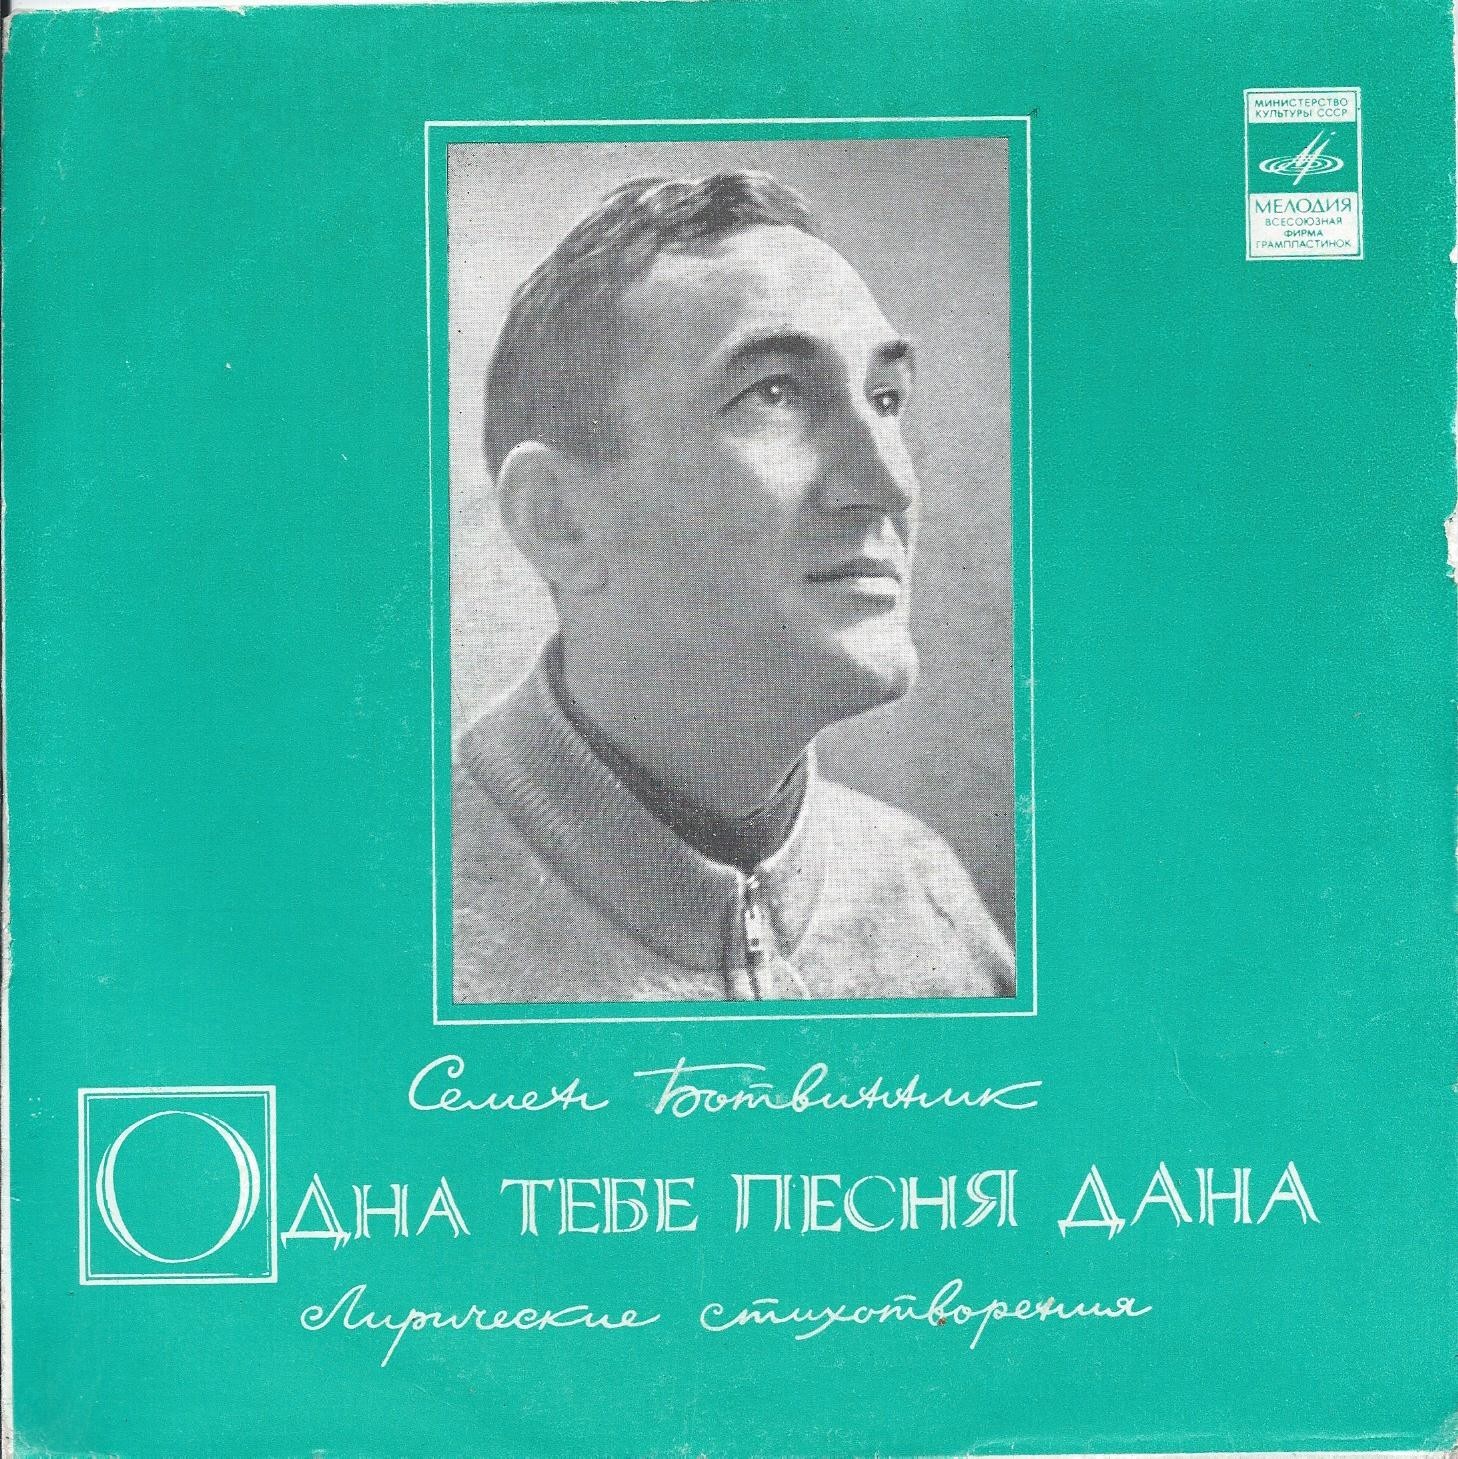 С. БОТВИННИК (1922): «Одна тебе песня дана», лирические стихотворения